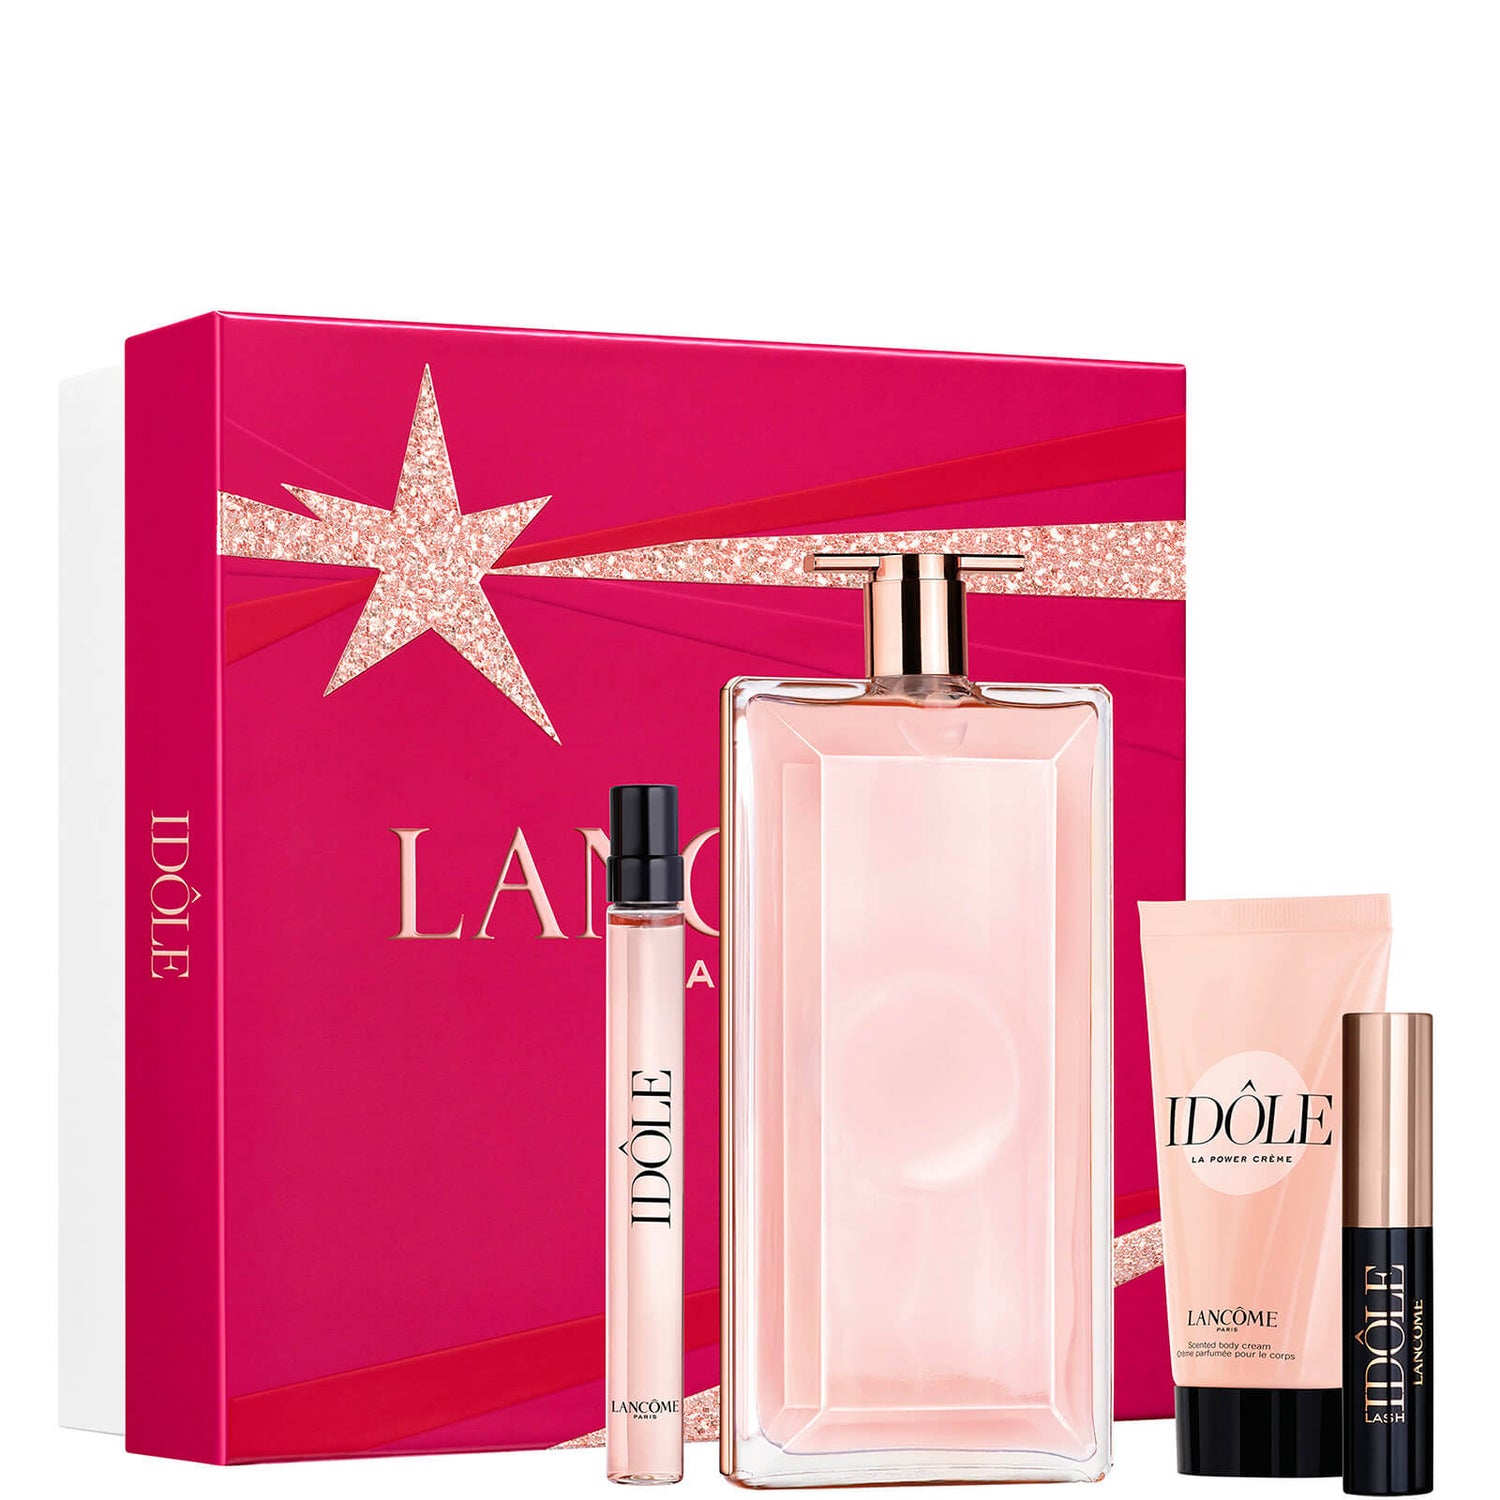 Lancôme Idôle Eau De Parfum 100ml Christmas Gift Set (Worth £126.00)